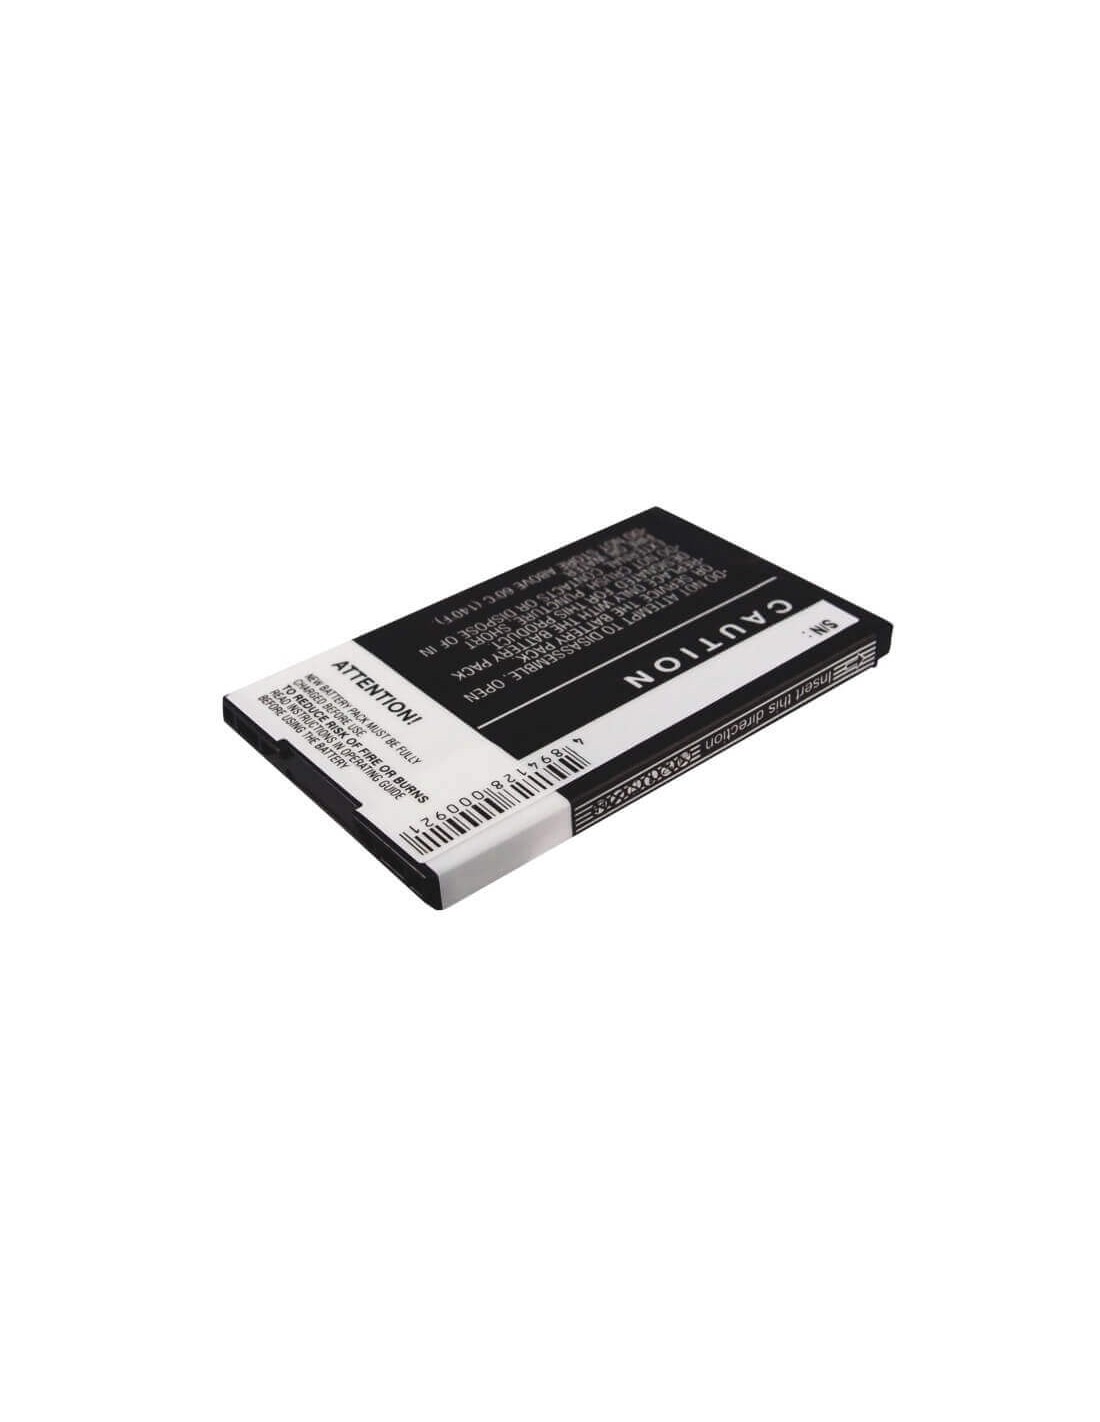 Battery for Blackberry 8100, 8100c, 8100r 3.7V, 900mAh - 3.33Wh